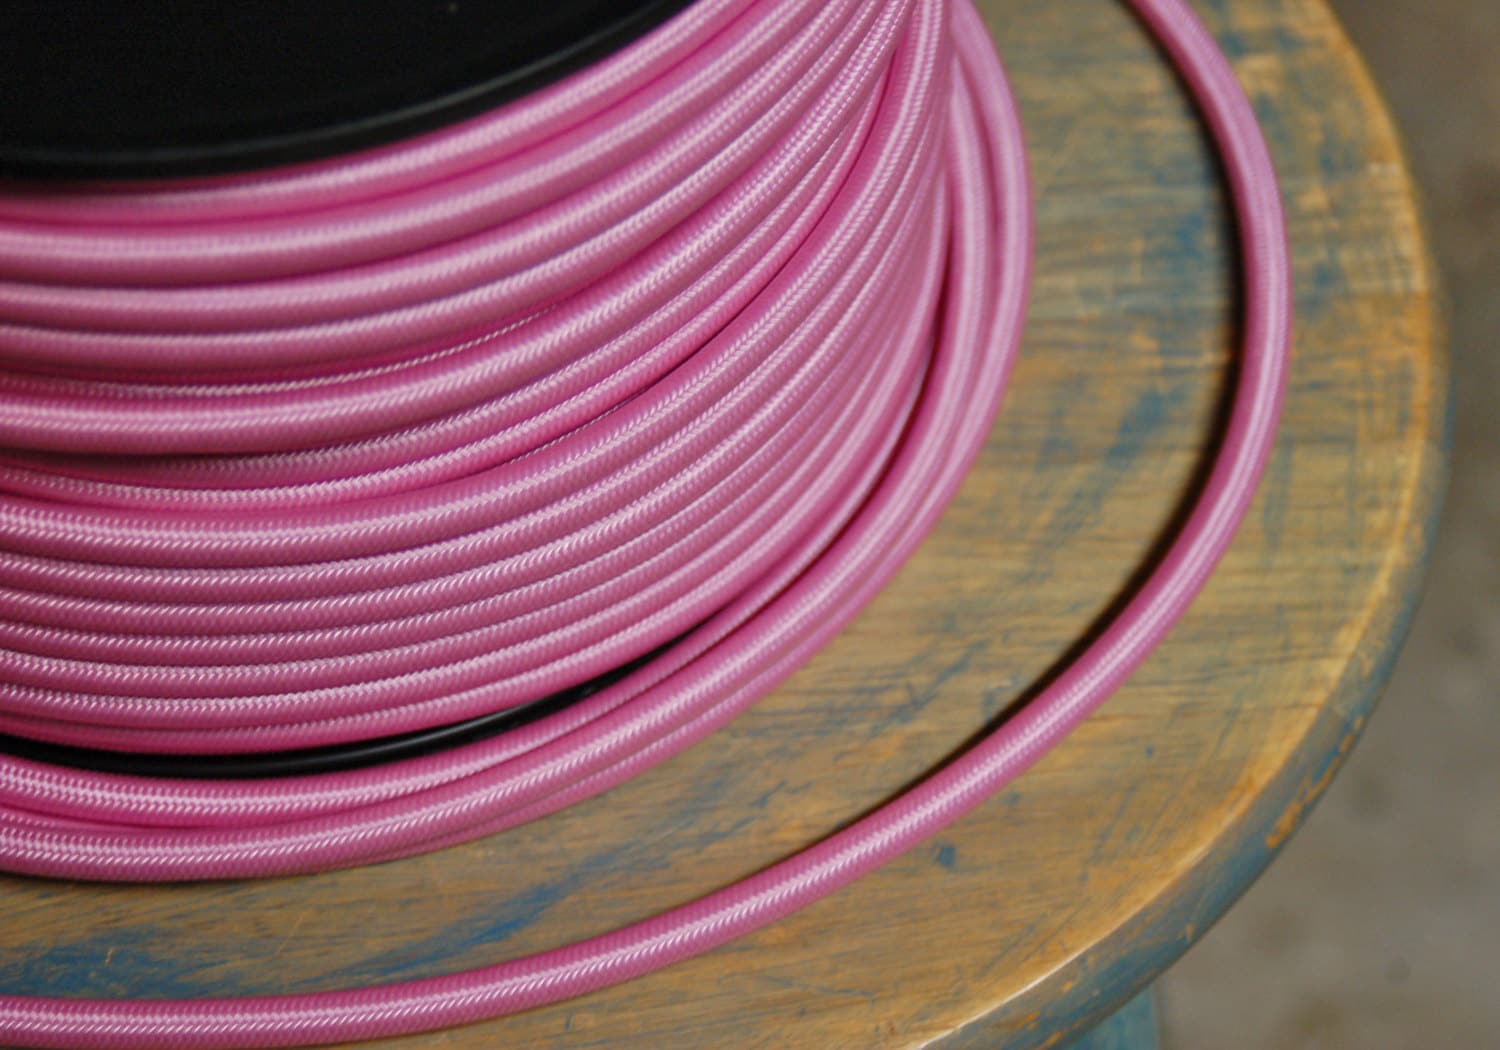 Cable de tela de 8 pies con enchufe conectado, 26 opciones de color, cable  trenzado, kit de re-alambre vintage, cable eléctrico de lámpara, cable de  enchufe de luz -  México